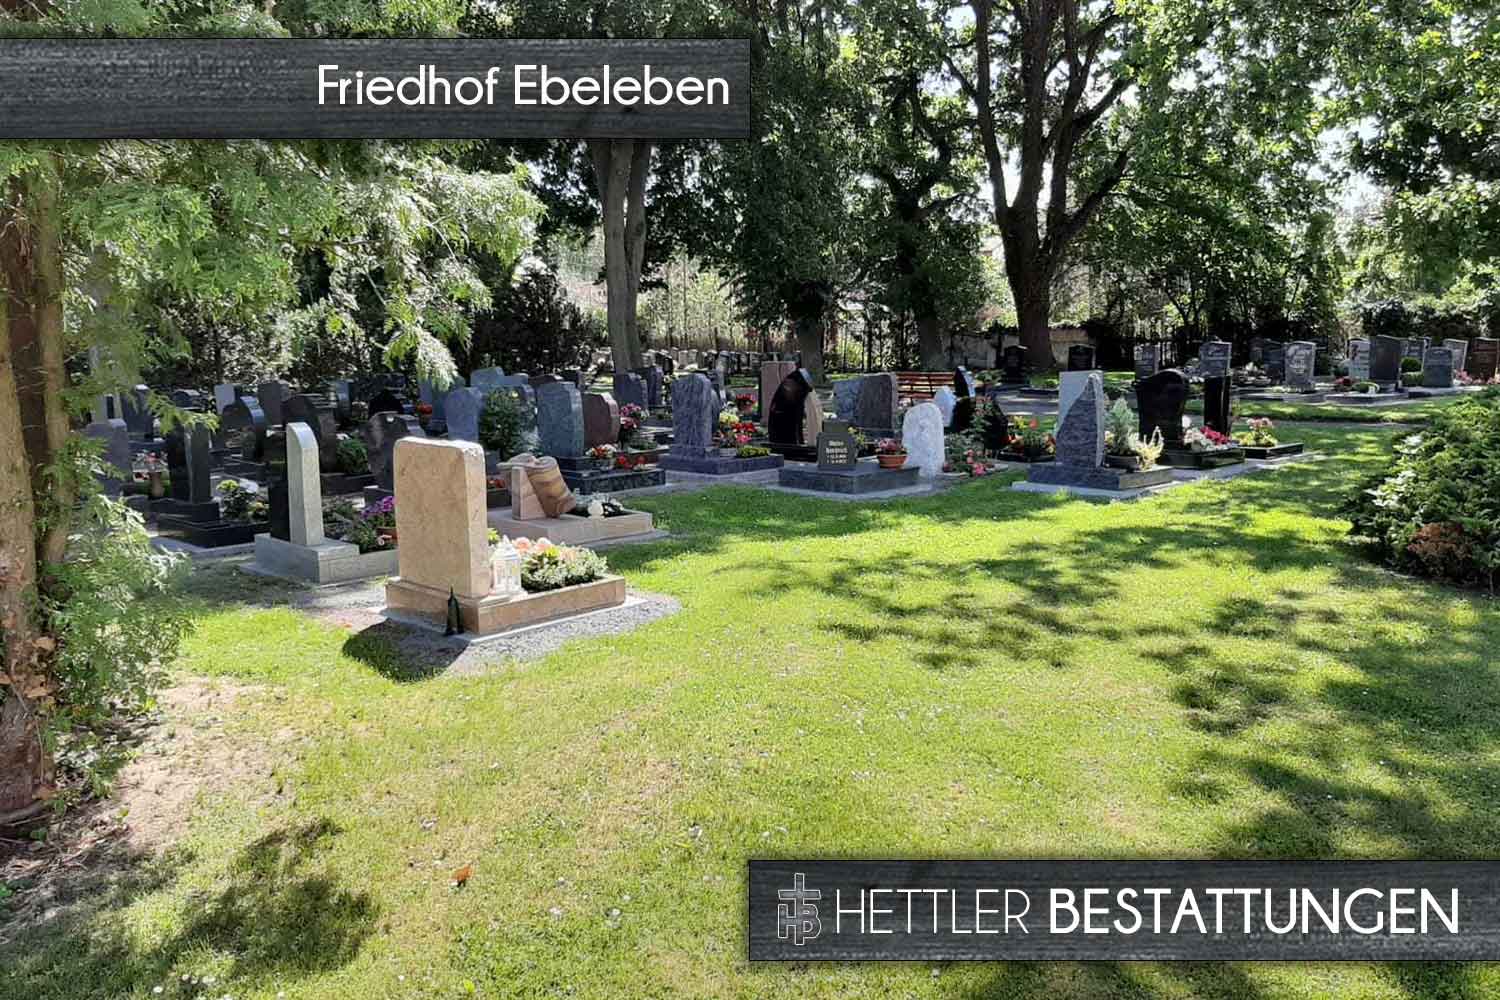 Friedhof in Ebeleben. Ihr Ort des Abschieds mit Hettler Bestattungen.